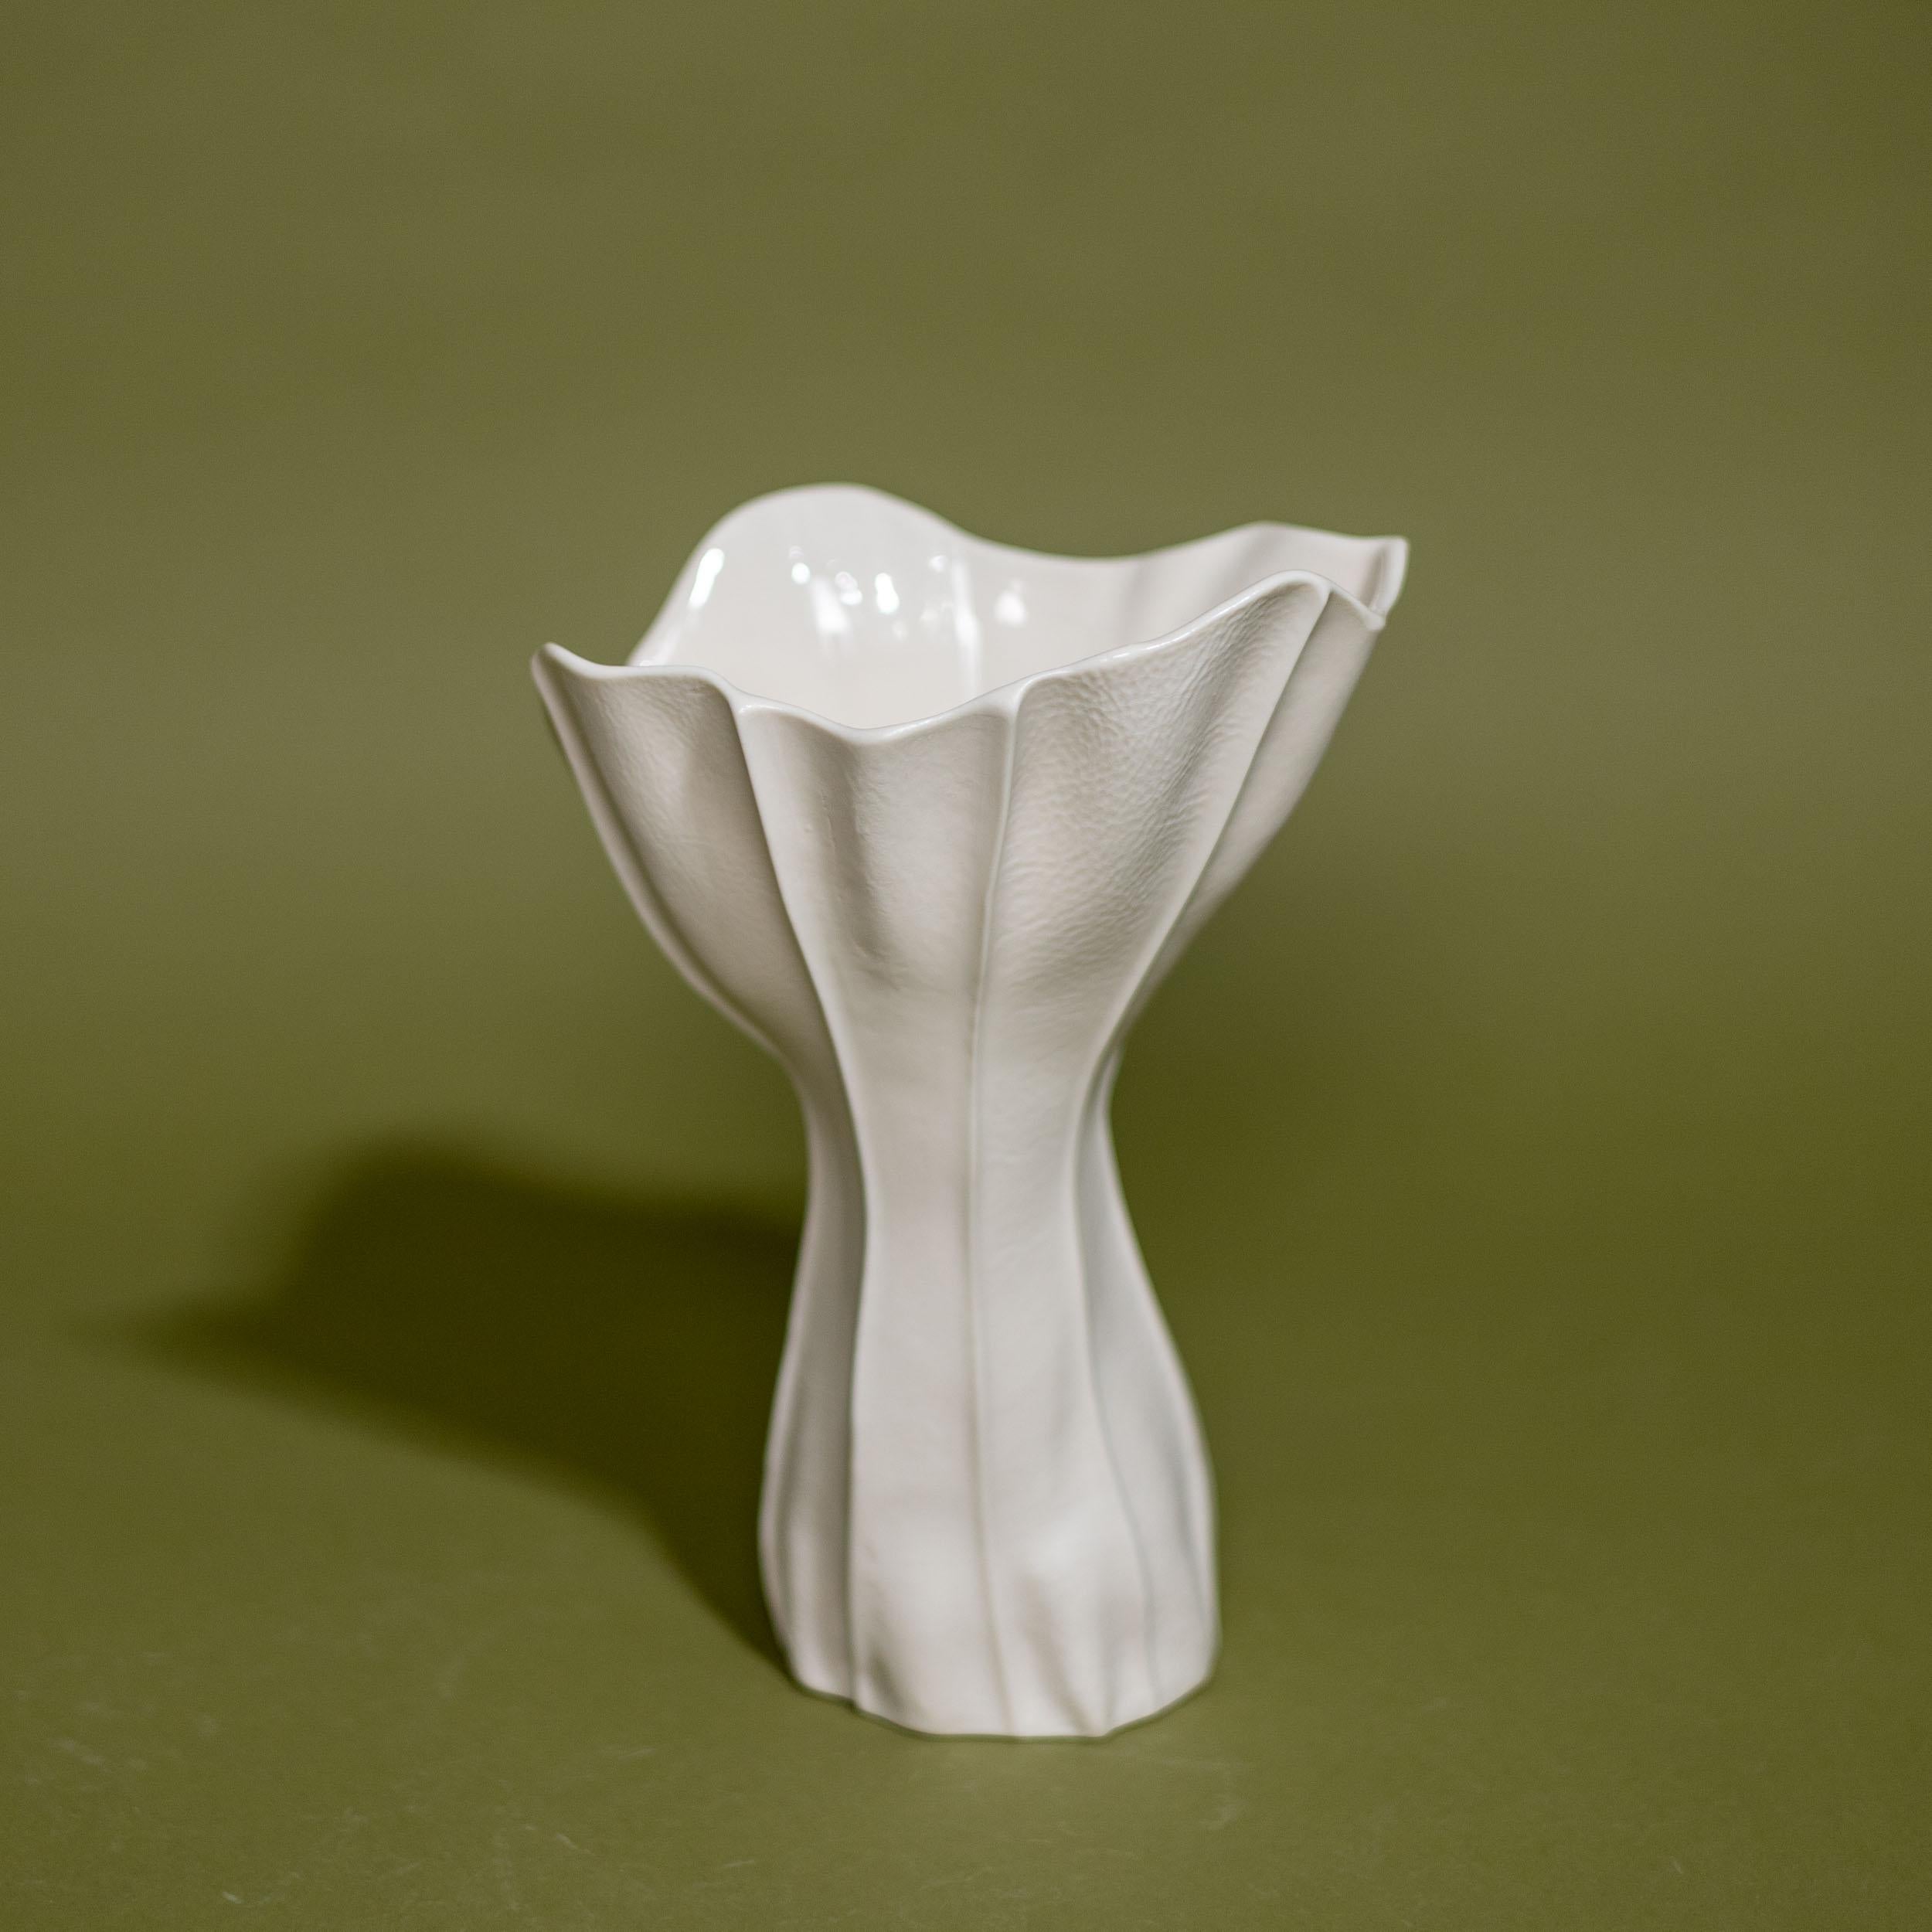 In-Stock, Set of 3 White Ceramic Vases & Bowl, Luft Tanaka, Porcelain, Organic 2